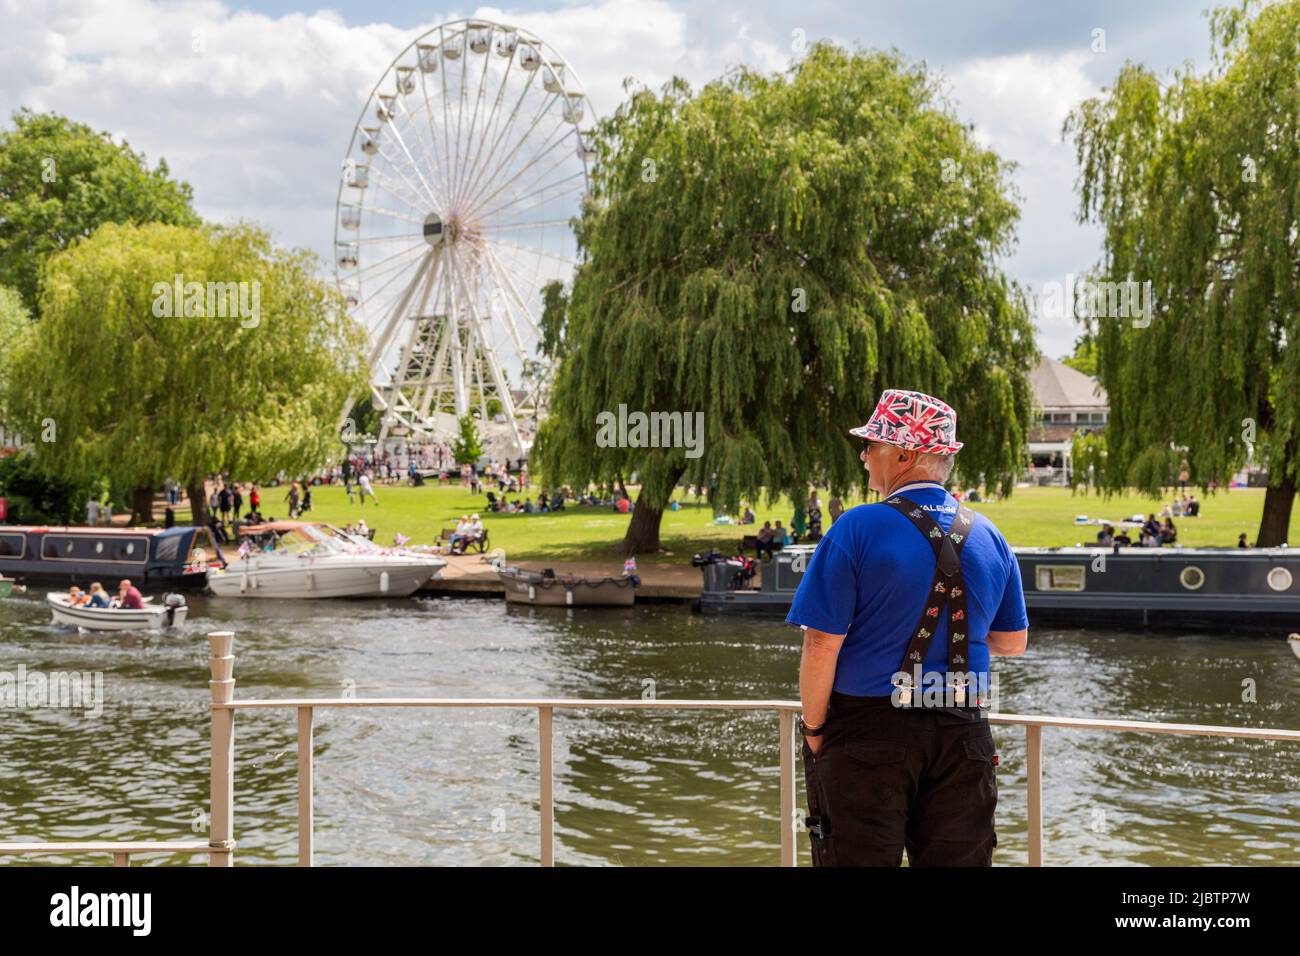 Ein Mann in einem Hut der Union Flag blickt über einen Fluss und sieht Menschen, die sich entspannen und die Sonne in einem Park genießen. Britisches Urlaubs-, Tourismus- oder Reisekonzept. Stockfoto